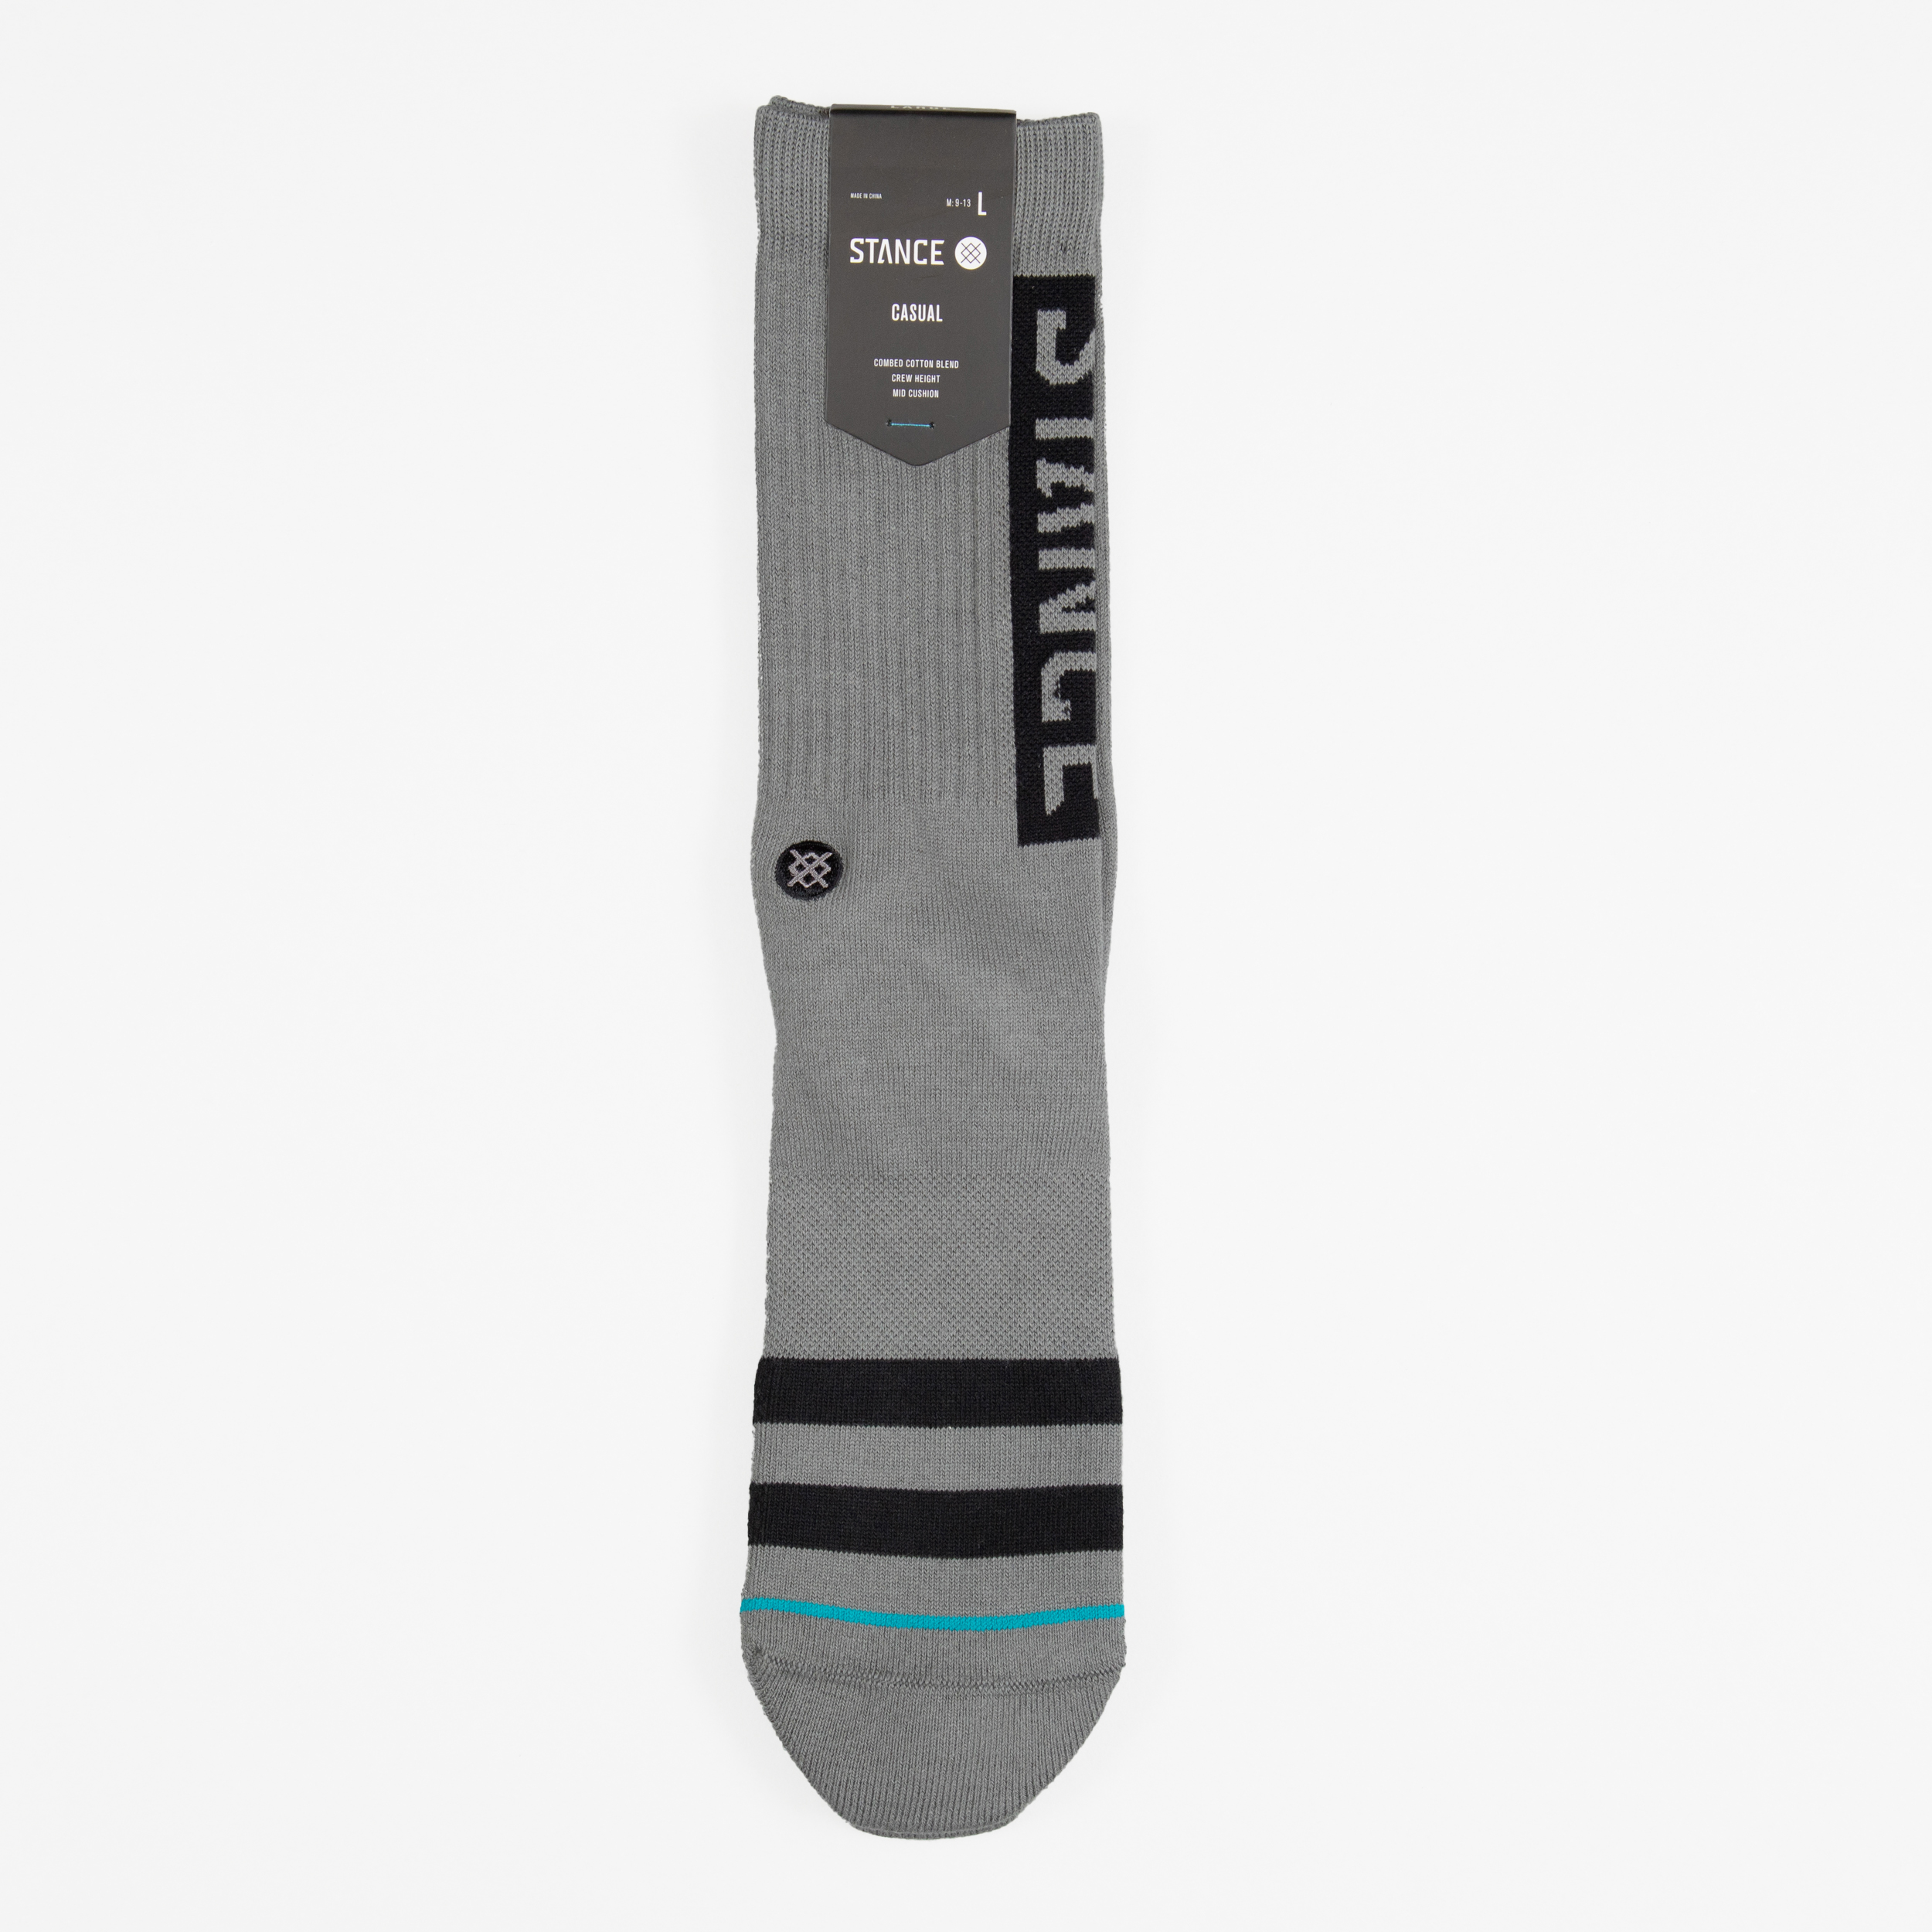 Stance Staple OG Crew Socks in Graphite Grey